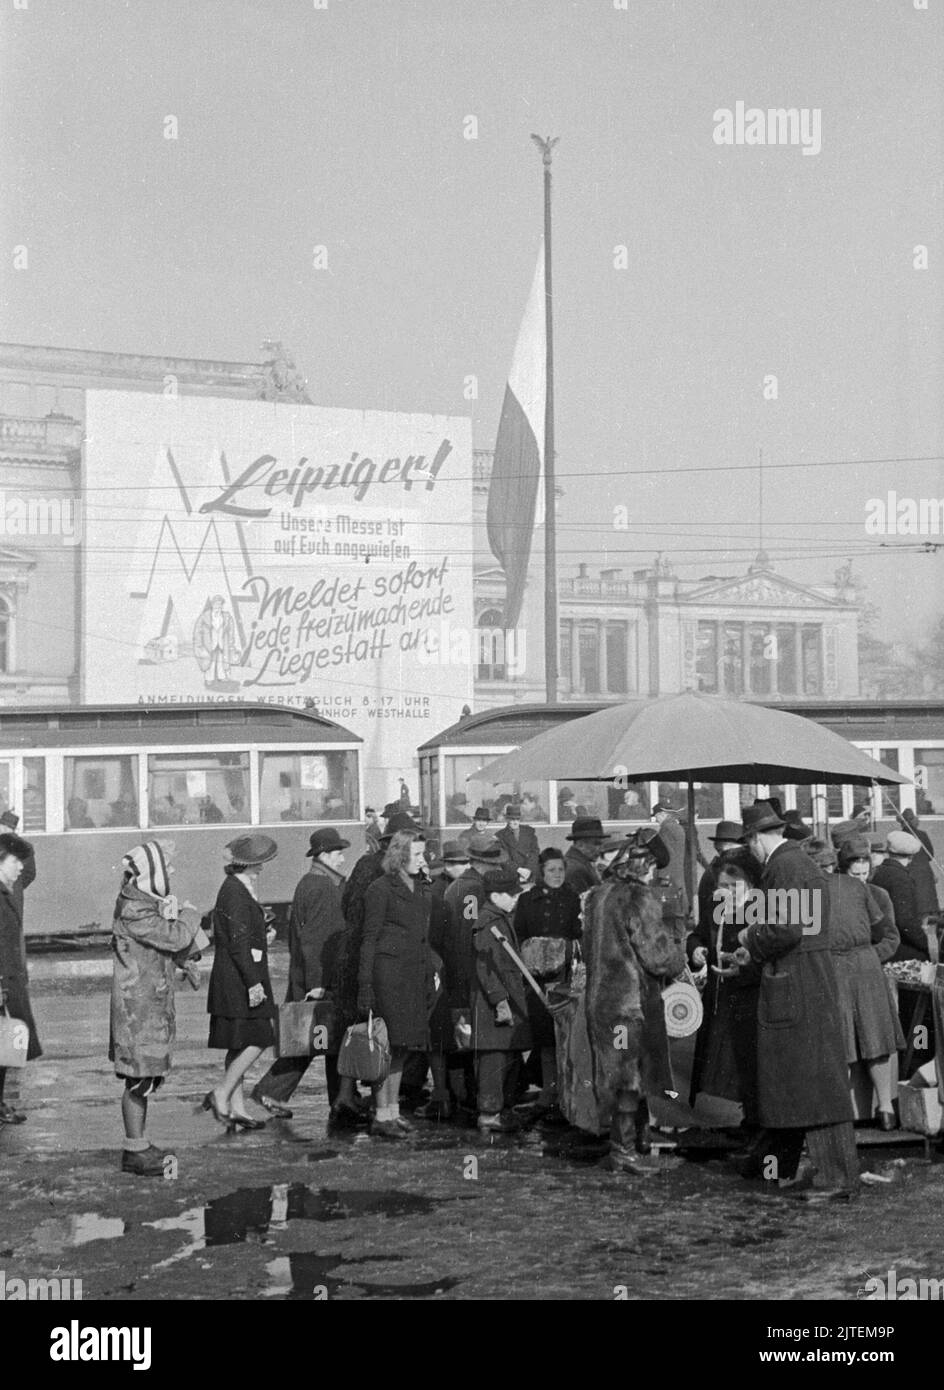 Öffentlicher Aufruf mit der Bitte um Meldung von Liegeplätzen für Besucher der Frühjahrsmesse in Leipzig, davor Werbewagen und Menschen, Deutschland 1947. Stock Photo